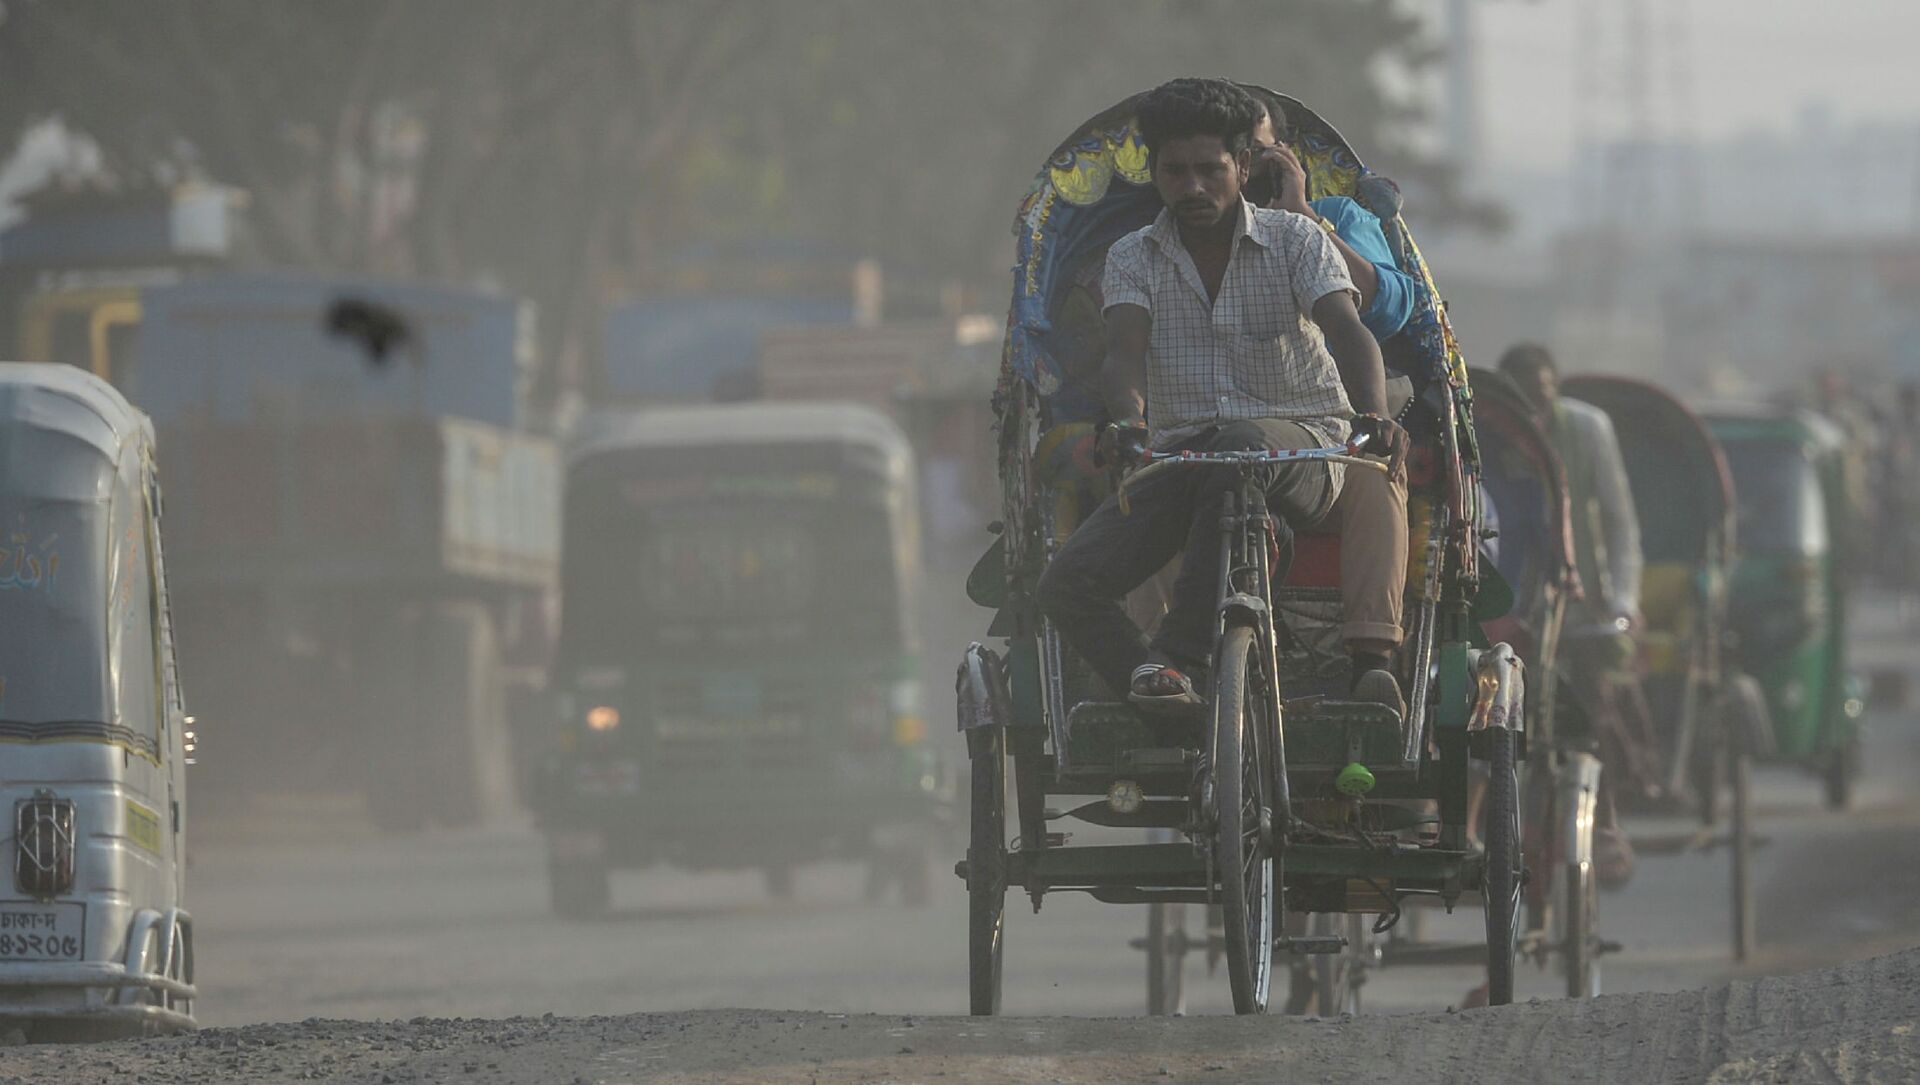 Рикша едет по дороге в условиях сильного смога в Дакке (Бангладеш). Архивное фото - Sputnik Кыргызстан, 1920, 16.03.2021